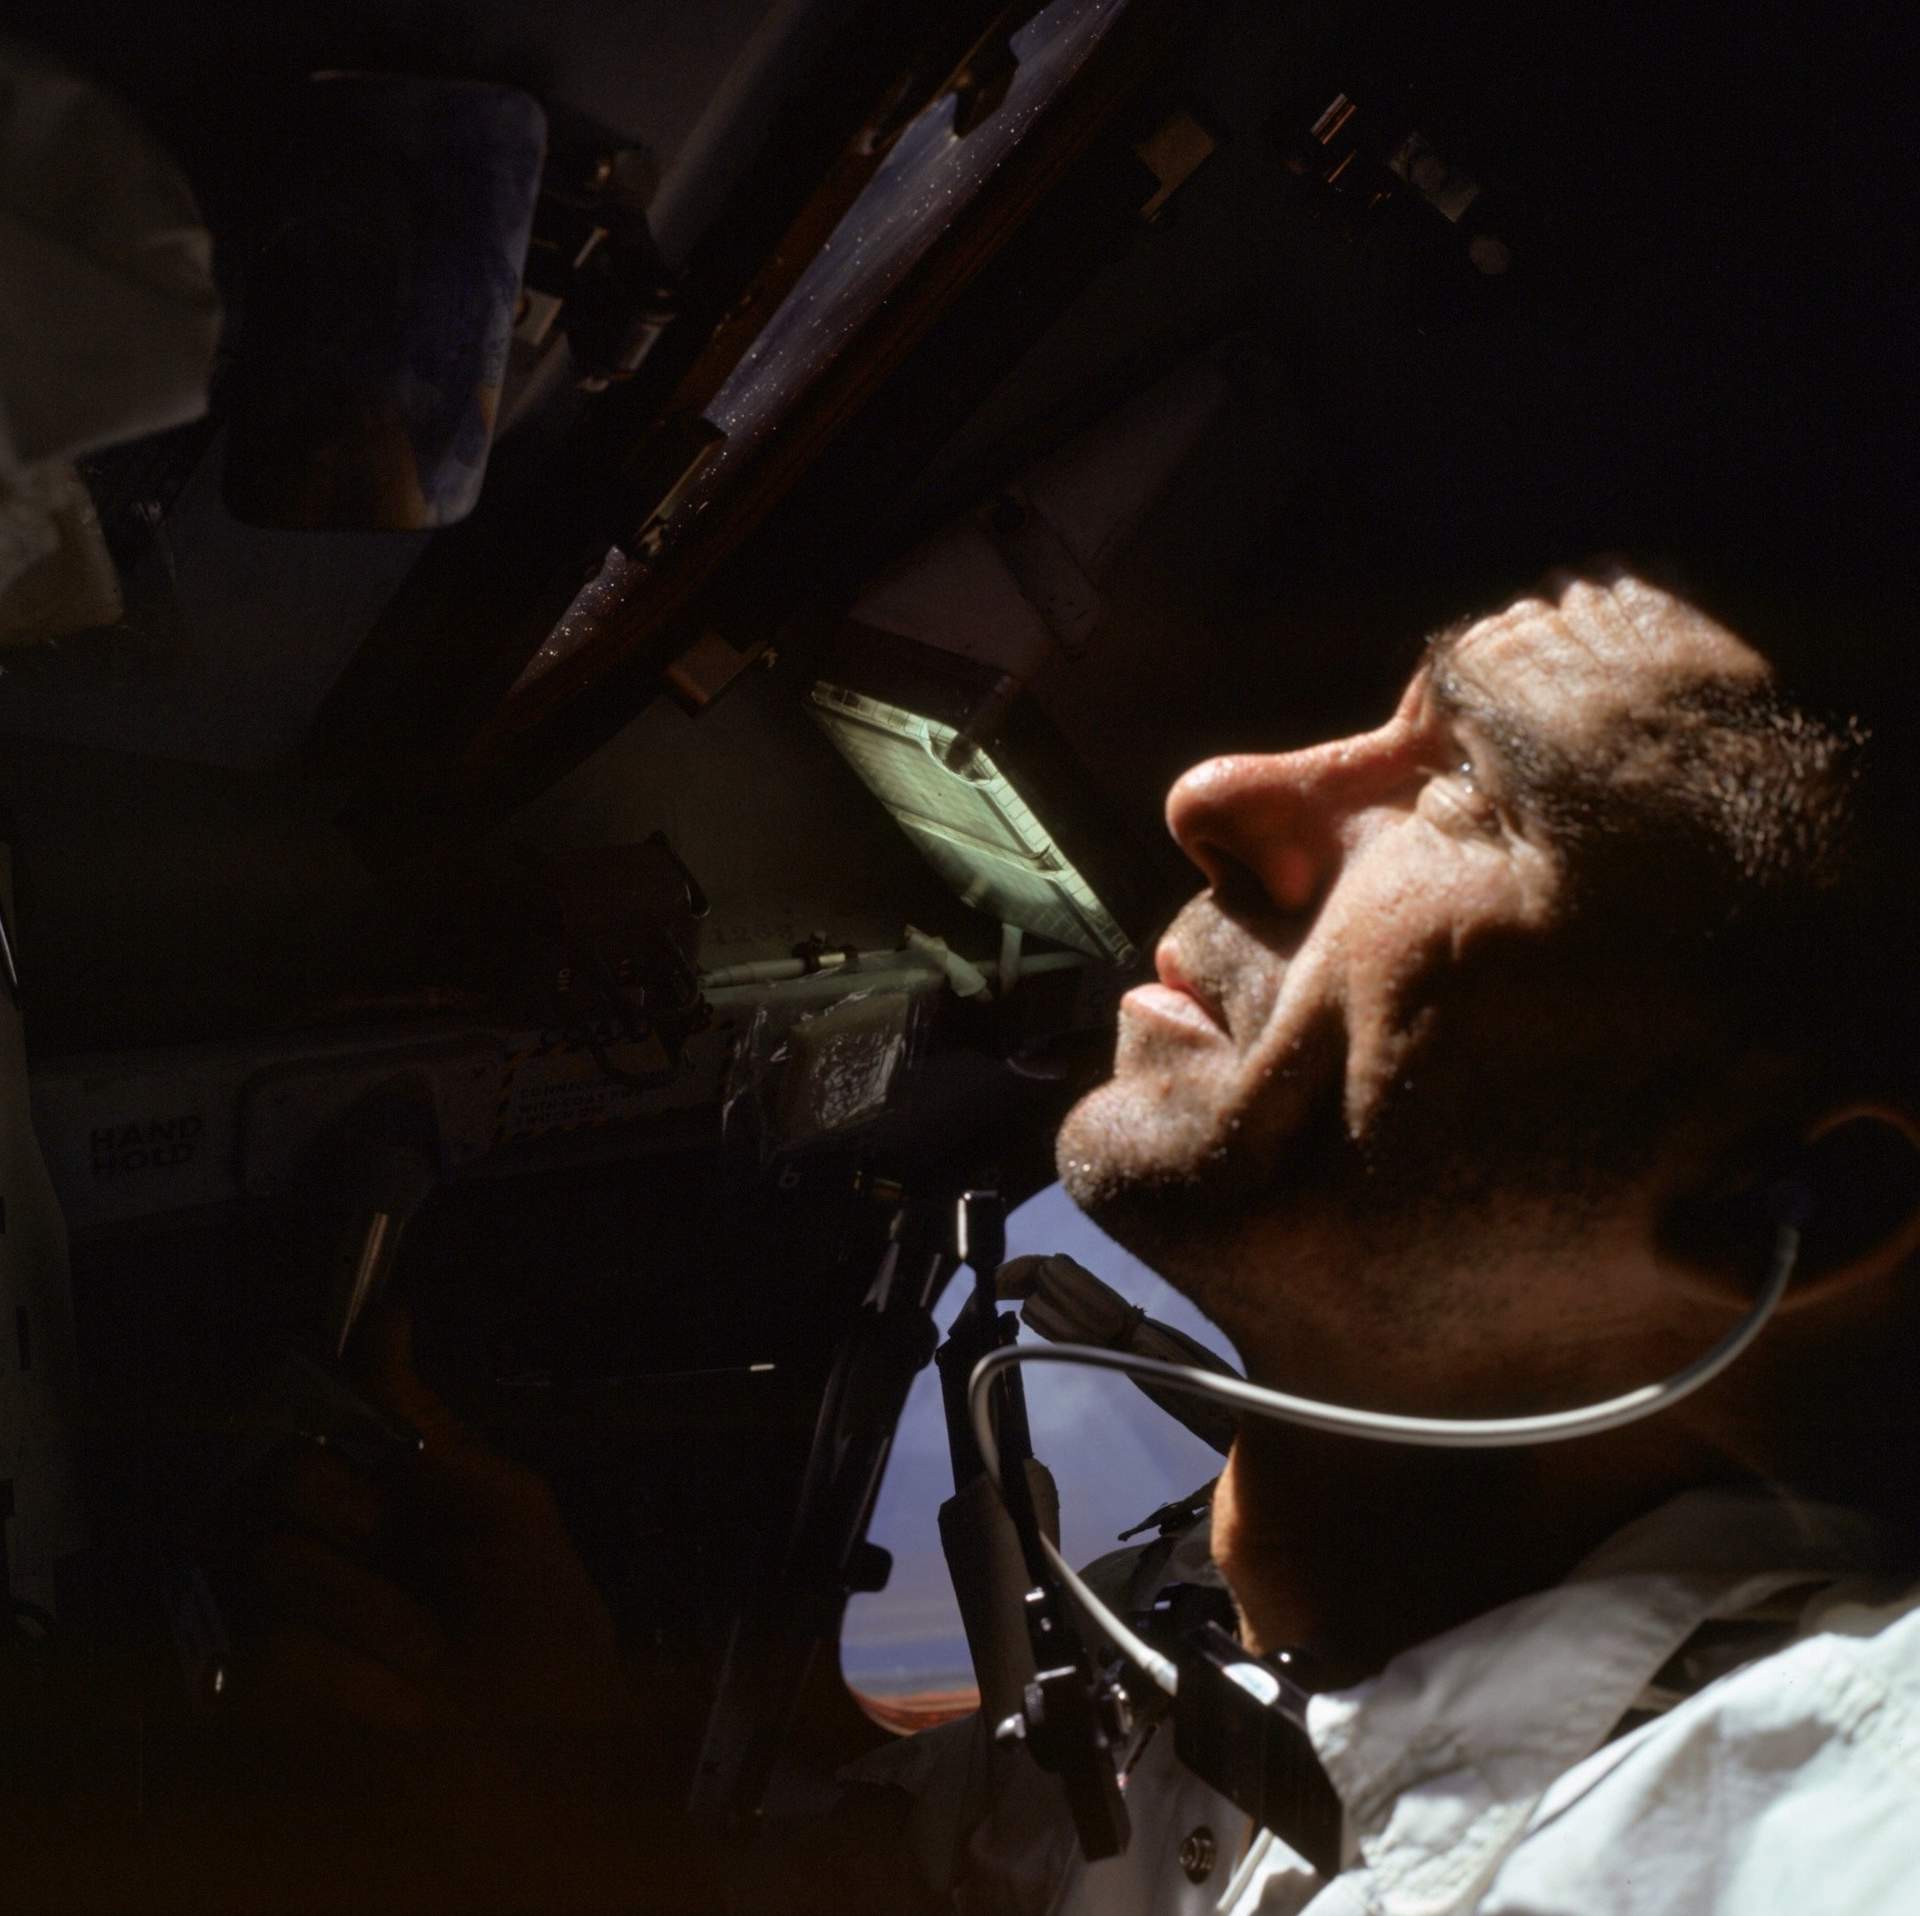 Apollo astronaut Walter Cunningham dies at 90